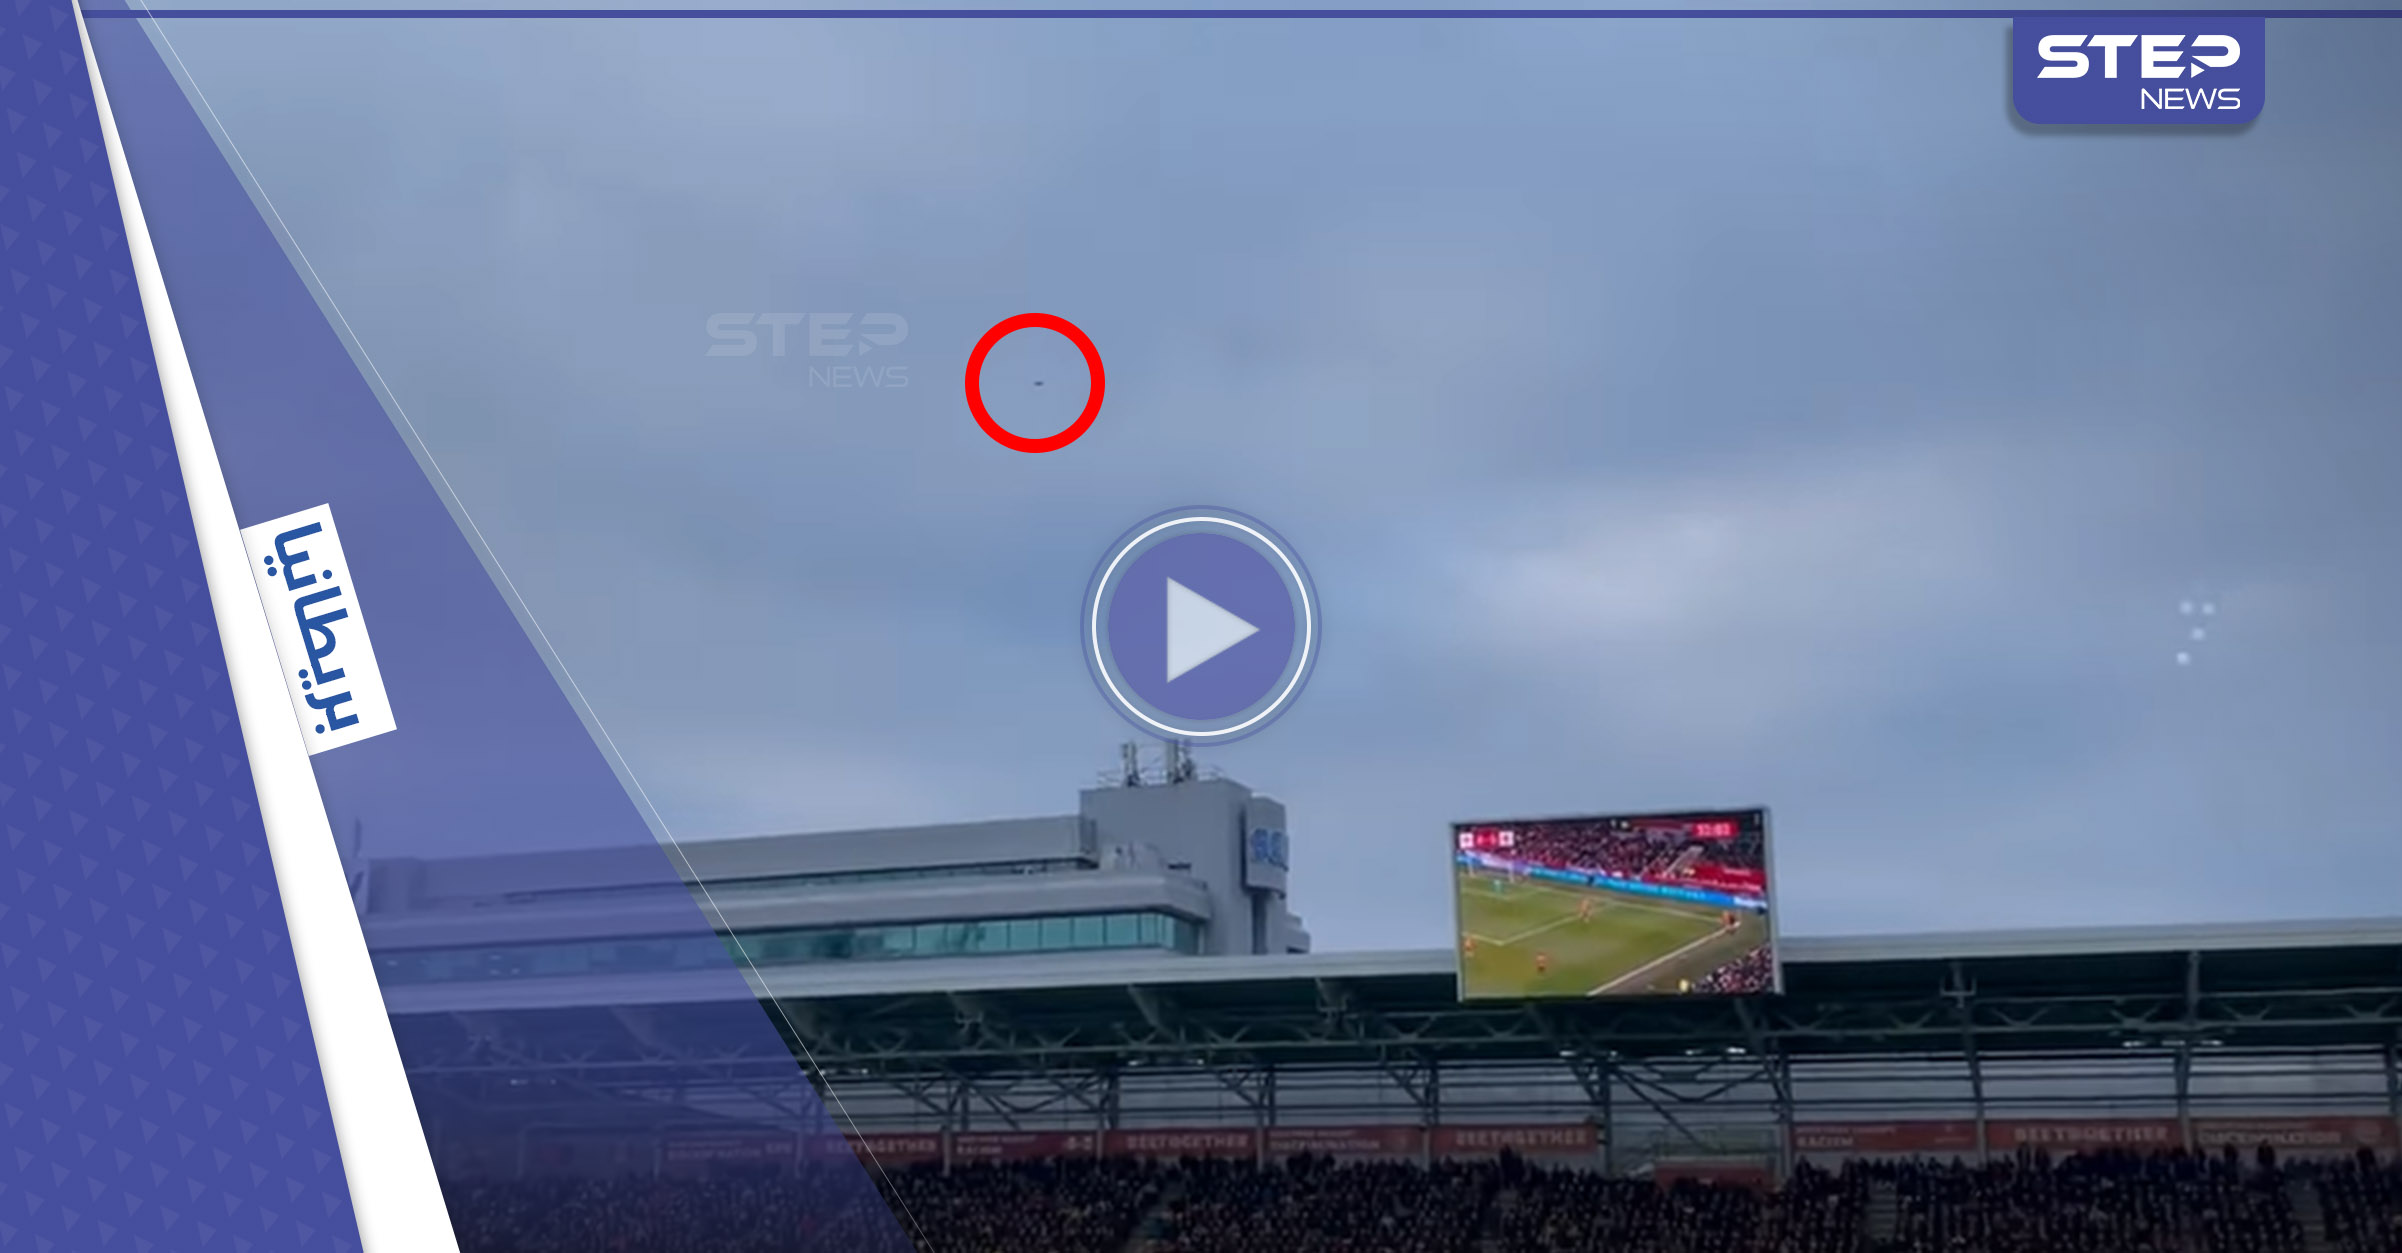 بالفيديو|| طائرة بدون طيار تقتحم ملعب كرة قدم وتتسبب في إيقاف مباراة بالدوري الإنكليزي